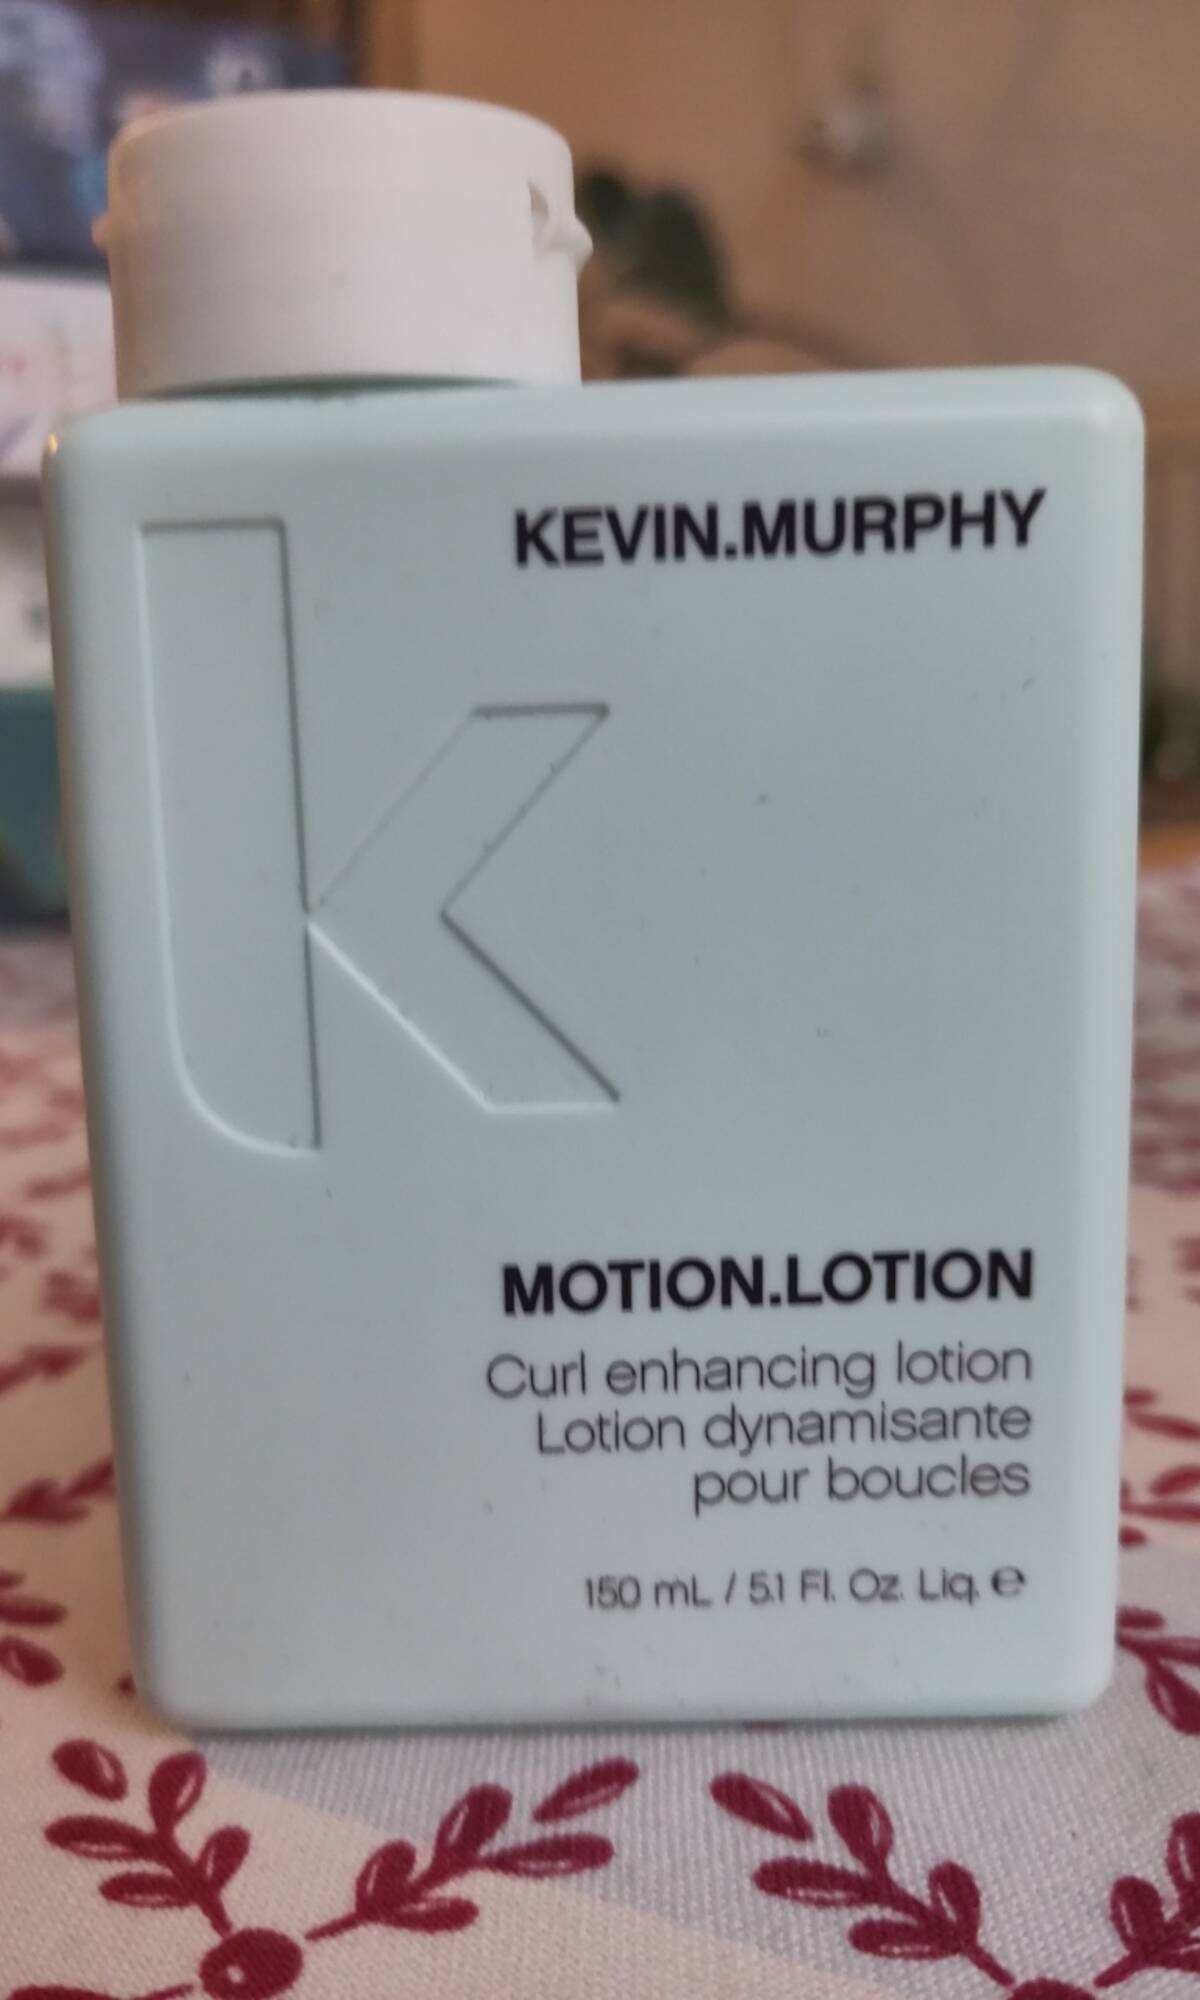 KEVIN MURPHY - Motion.lotion dynamisante pour boucles